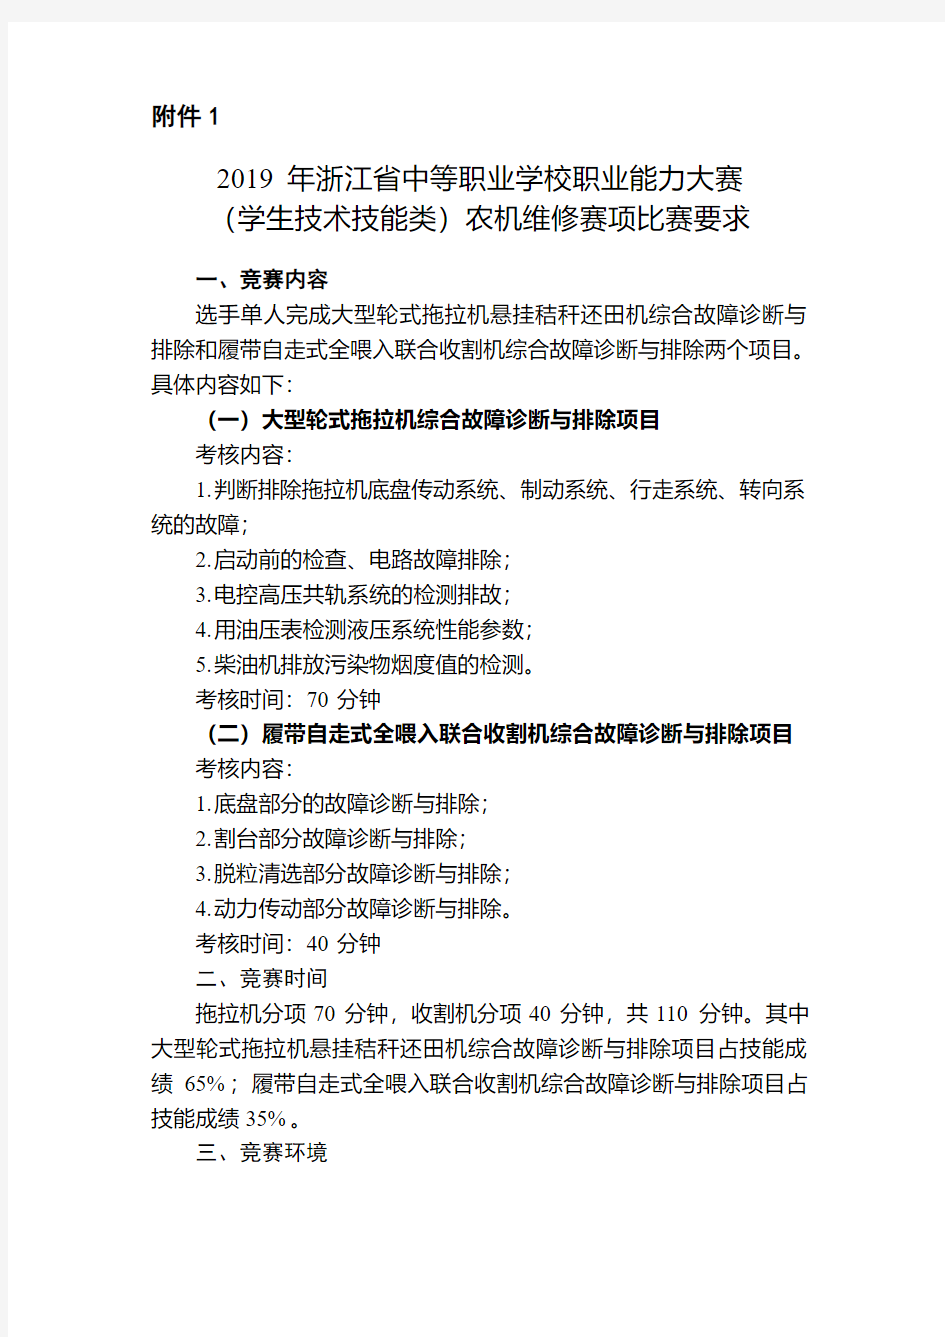 2019年浙江省中等职业学校职业能力大赛学生技术技能类)农机维修赛项比赛要求